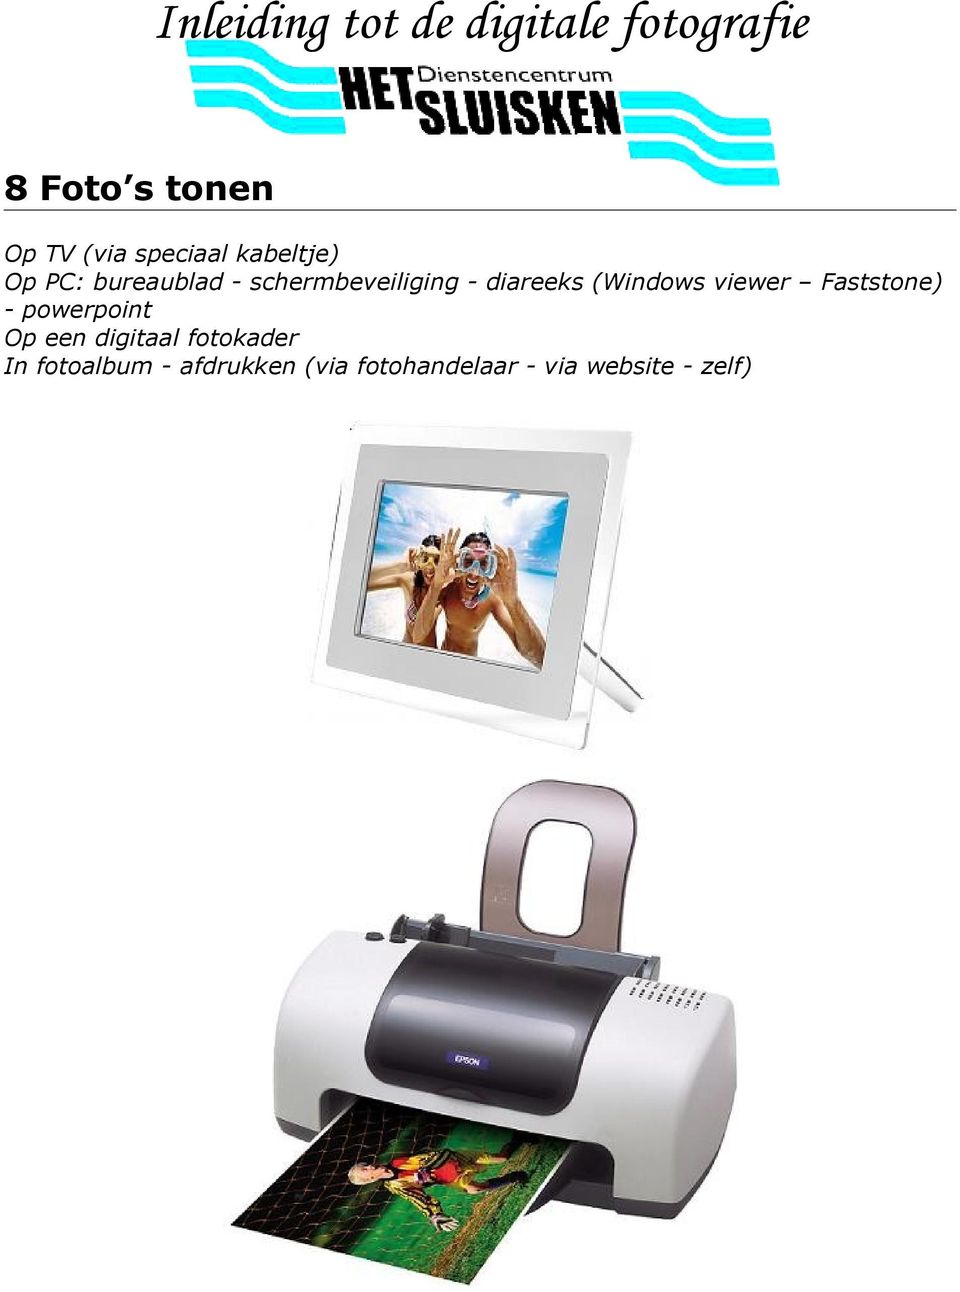 viewer Faststone) - powerpoint Op een digitaal fotokader